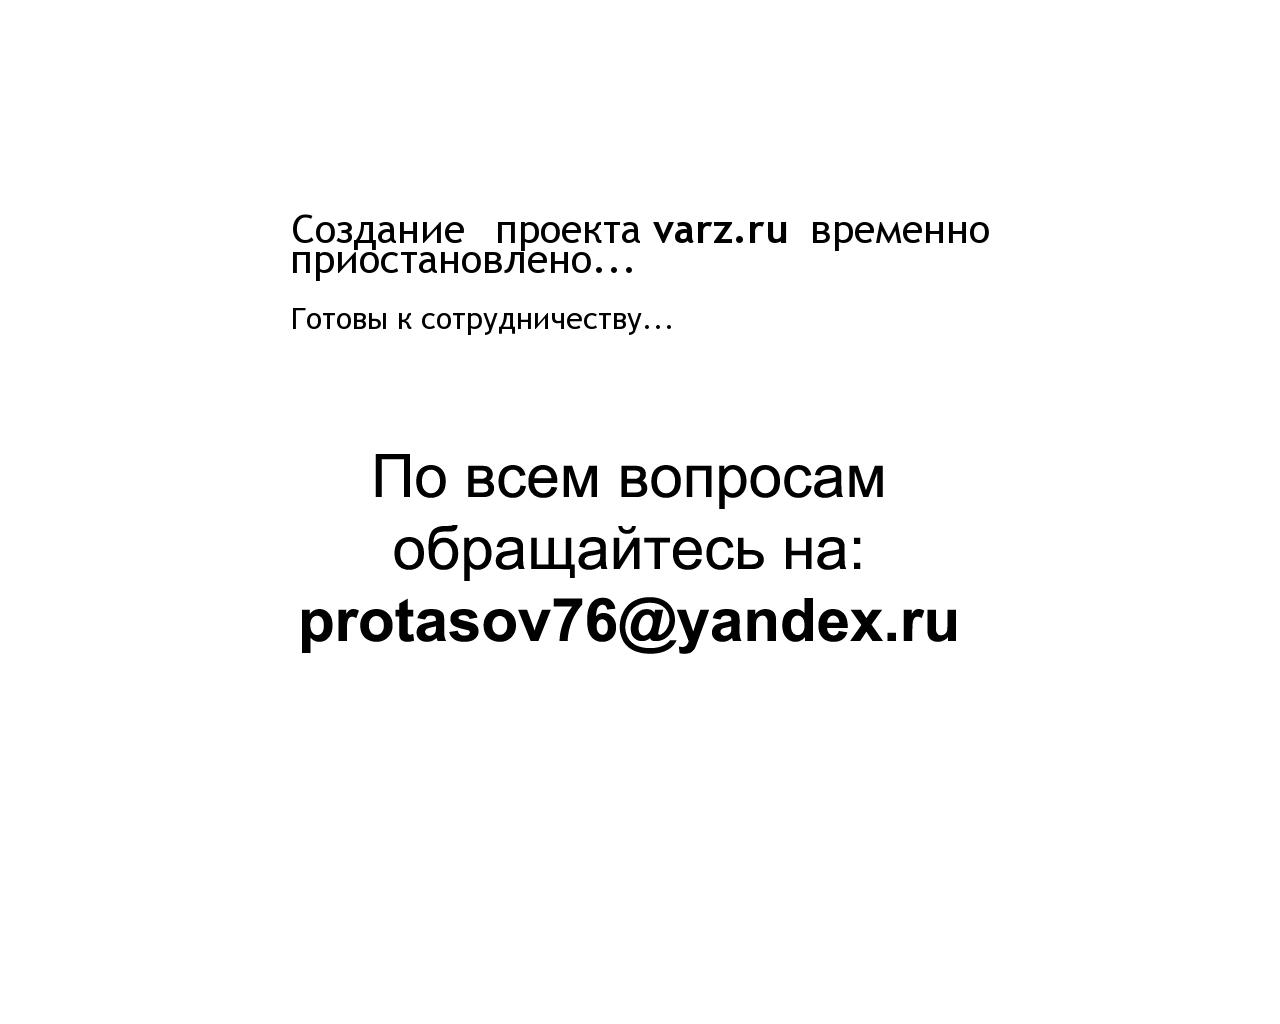 Изображение сайта varz.ru в разрешении 1280x1024